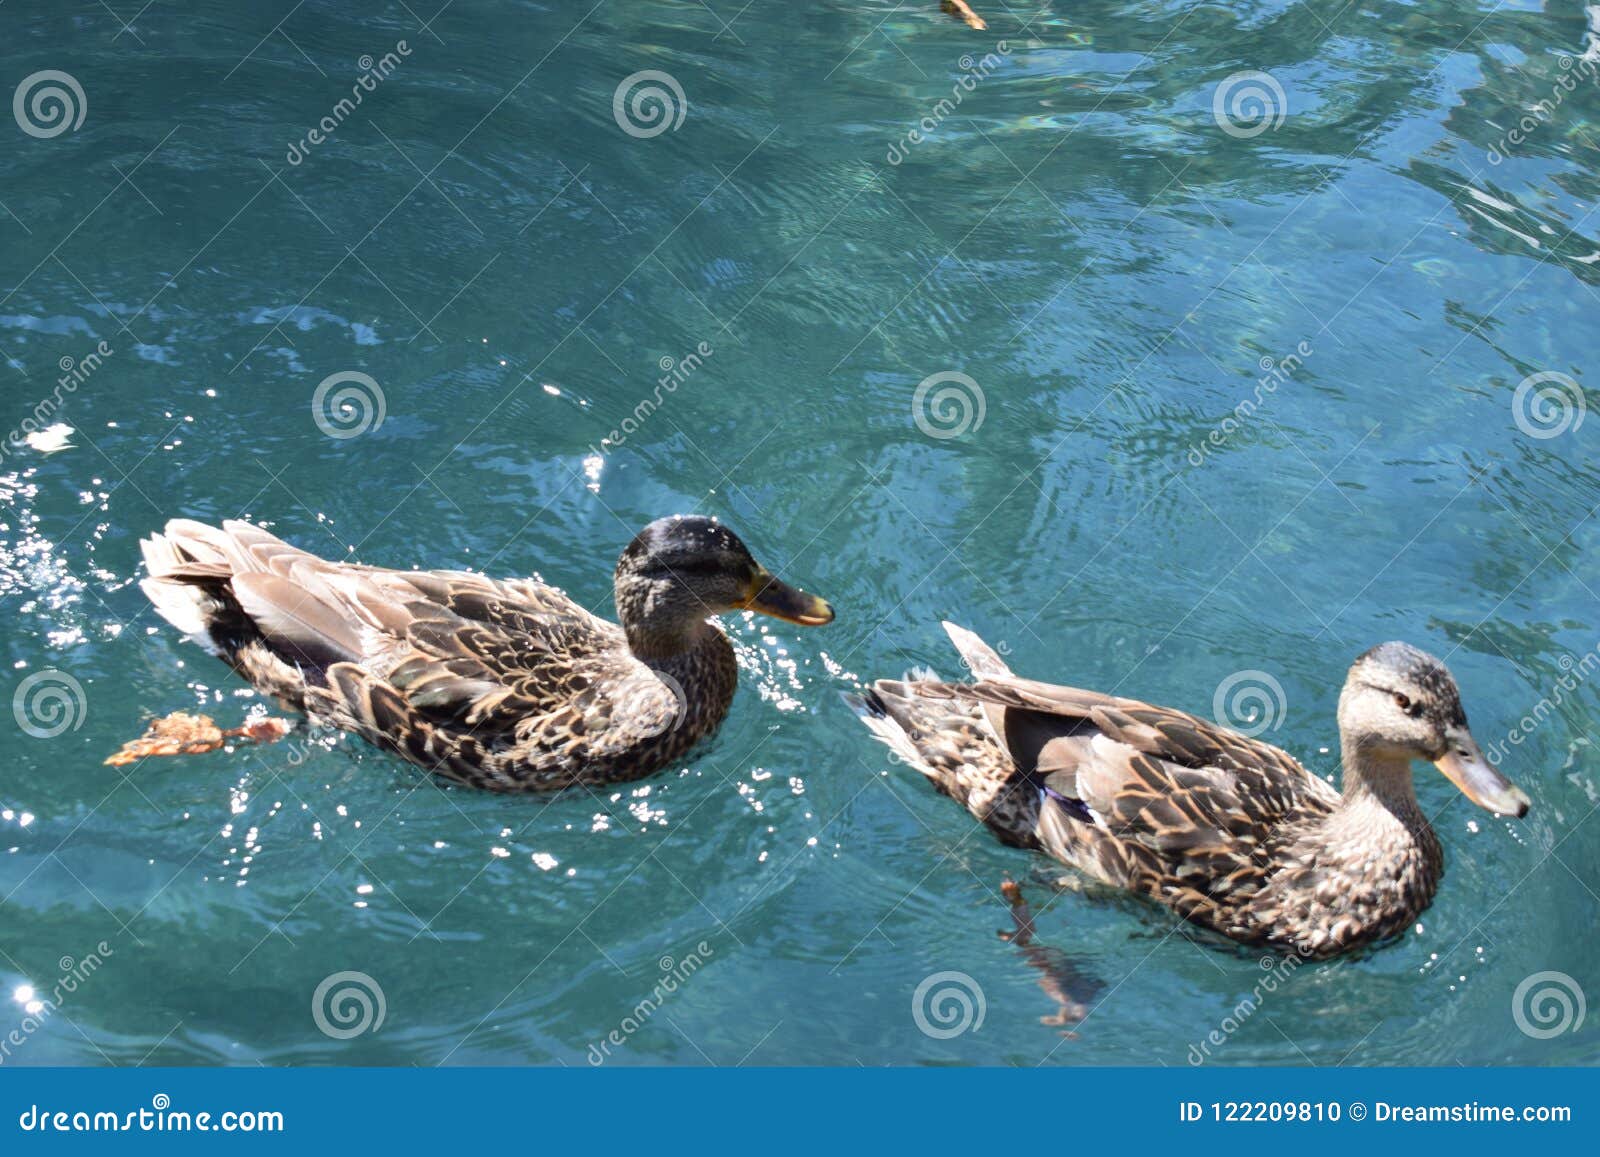 patos nadando, animales, animals pats duck